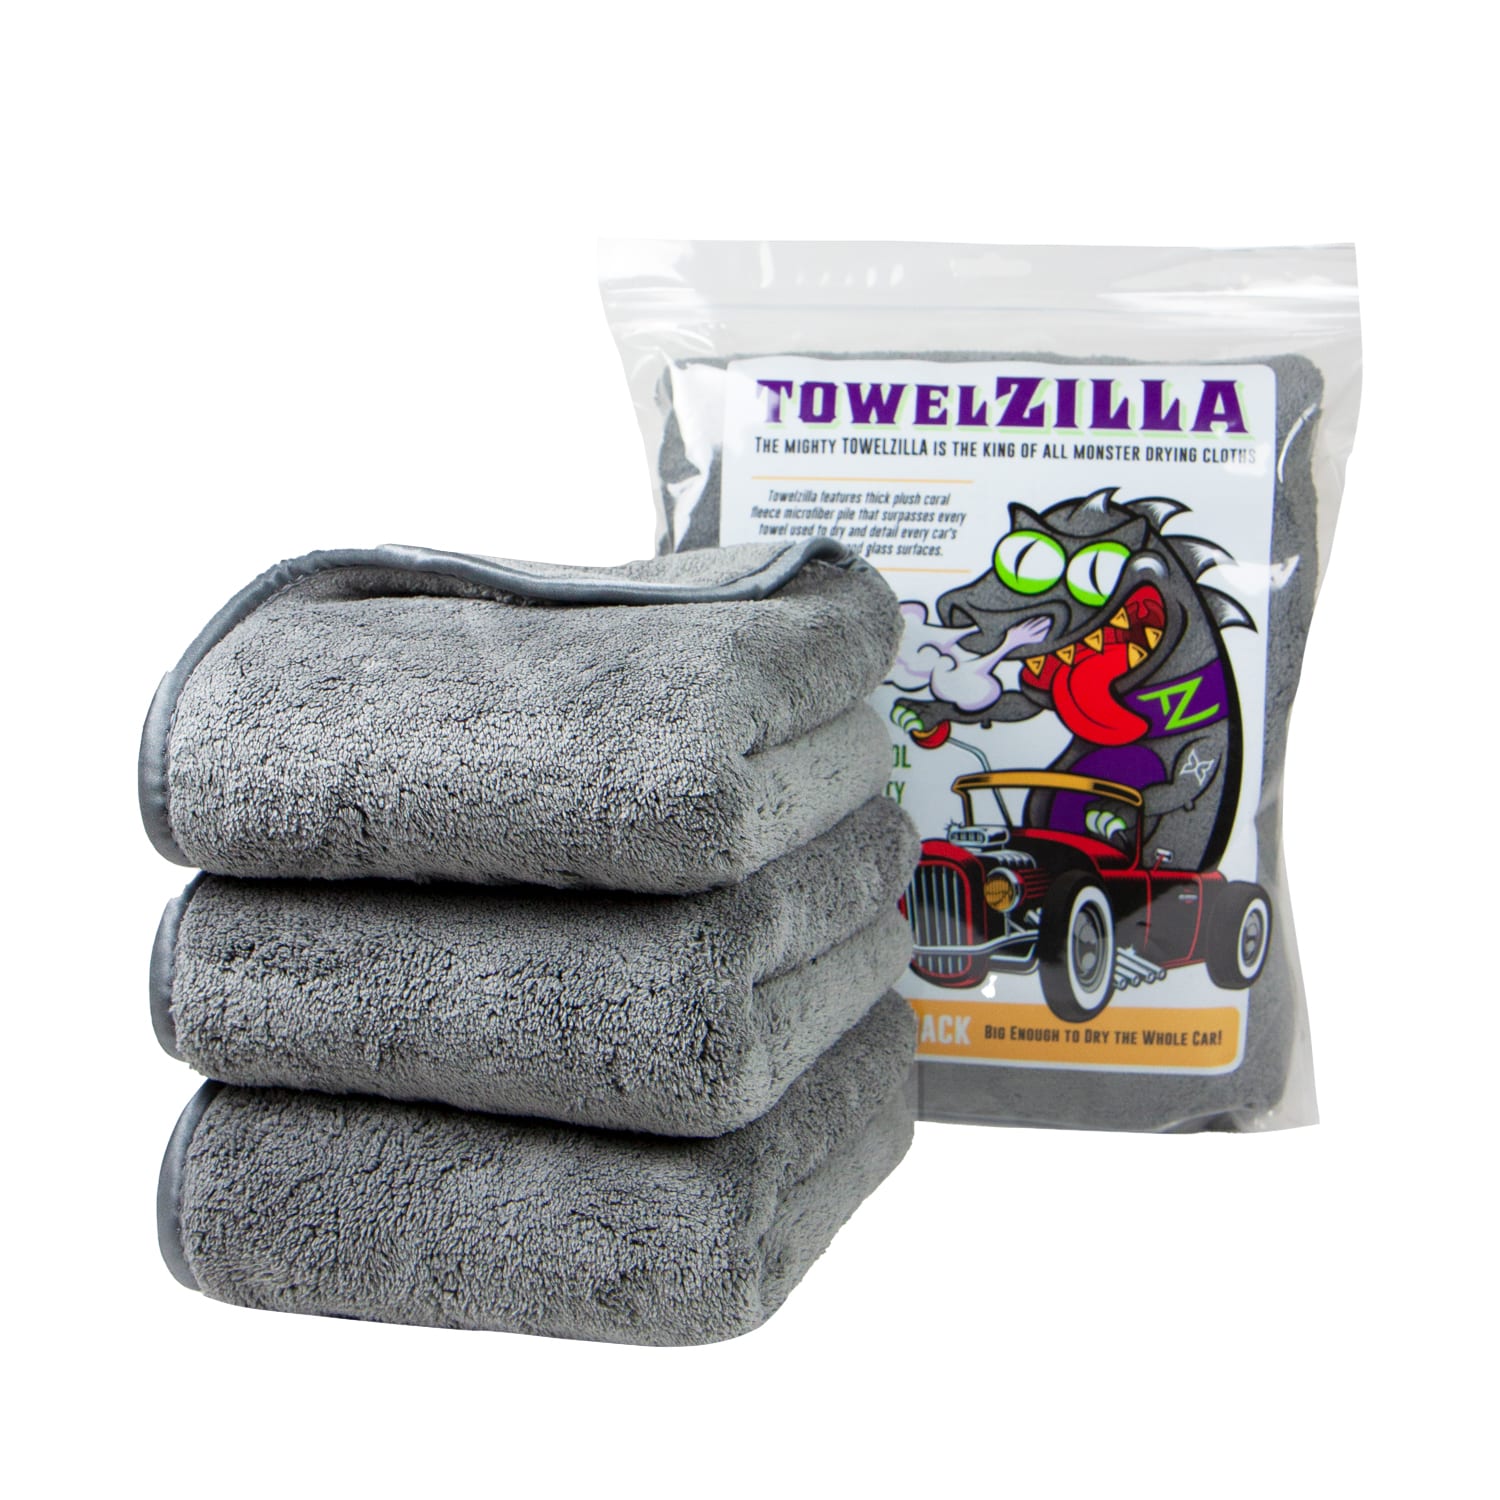 Professional Grade 36 Pack Microfiber Towel